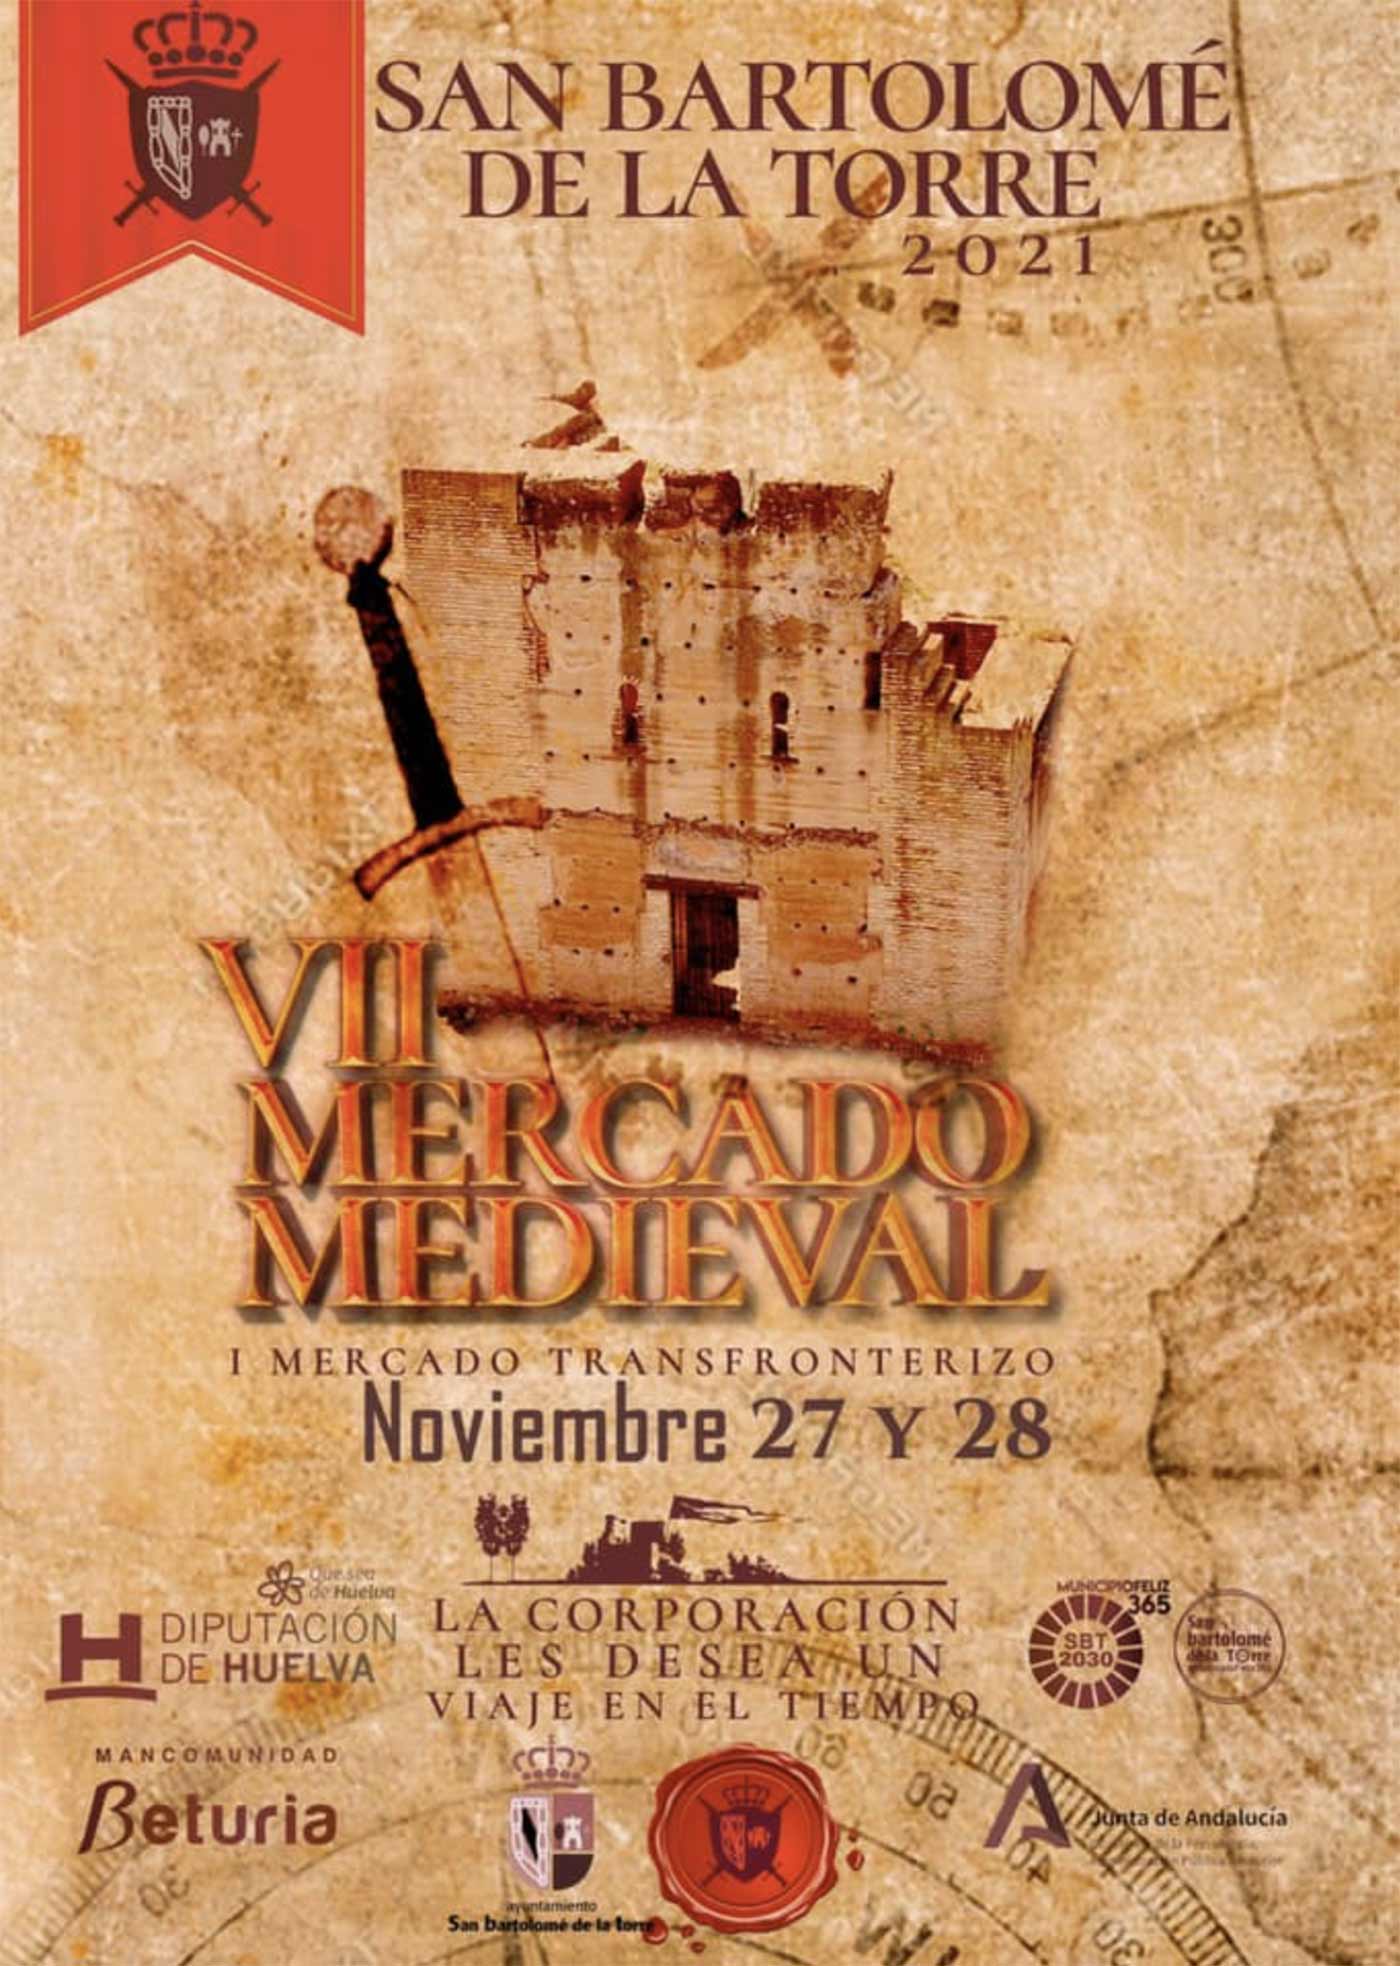 mercado medieval San Bartolome de la Torre Mercado Transfronterizo 27 y 28 noviembre 2021